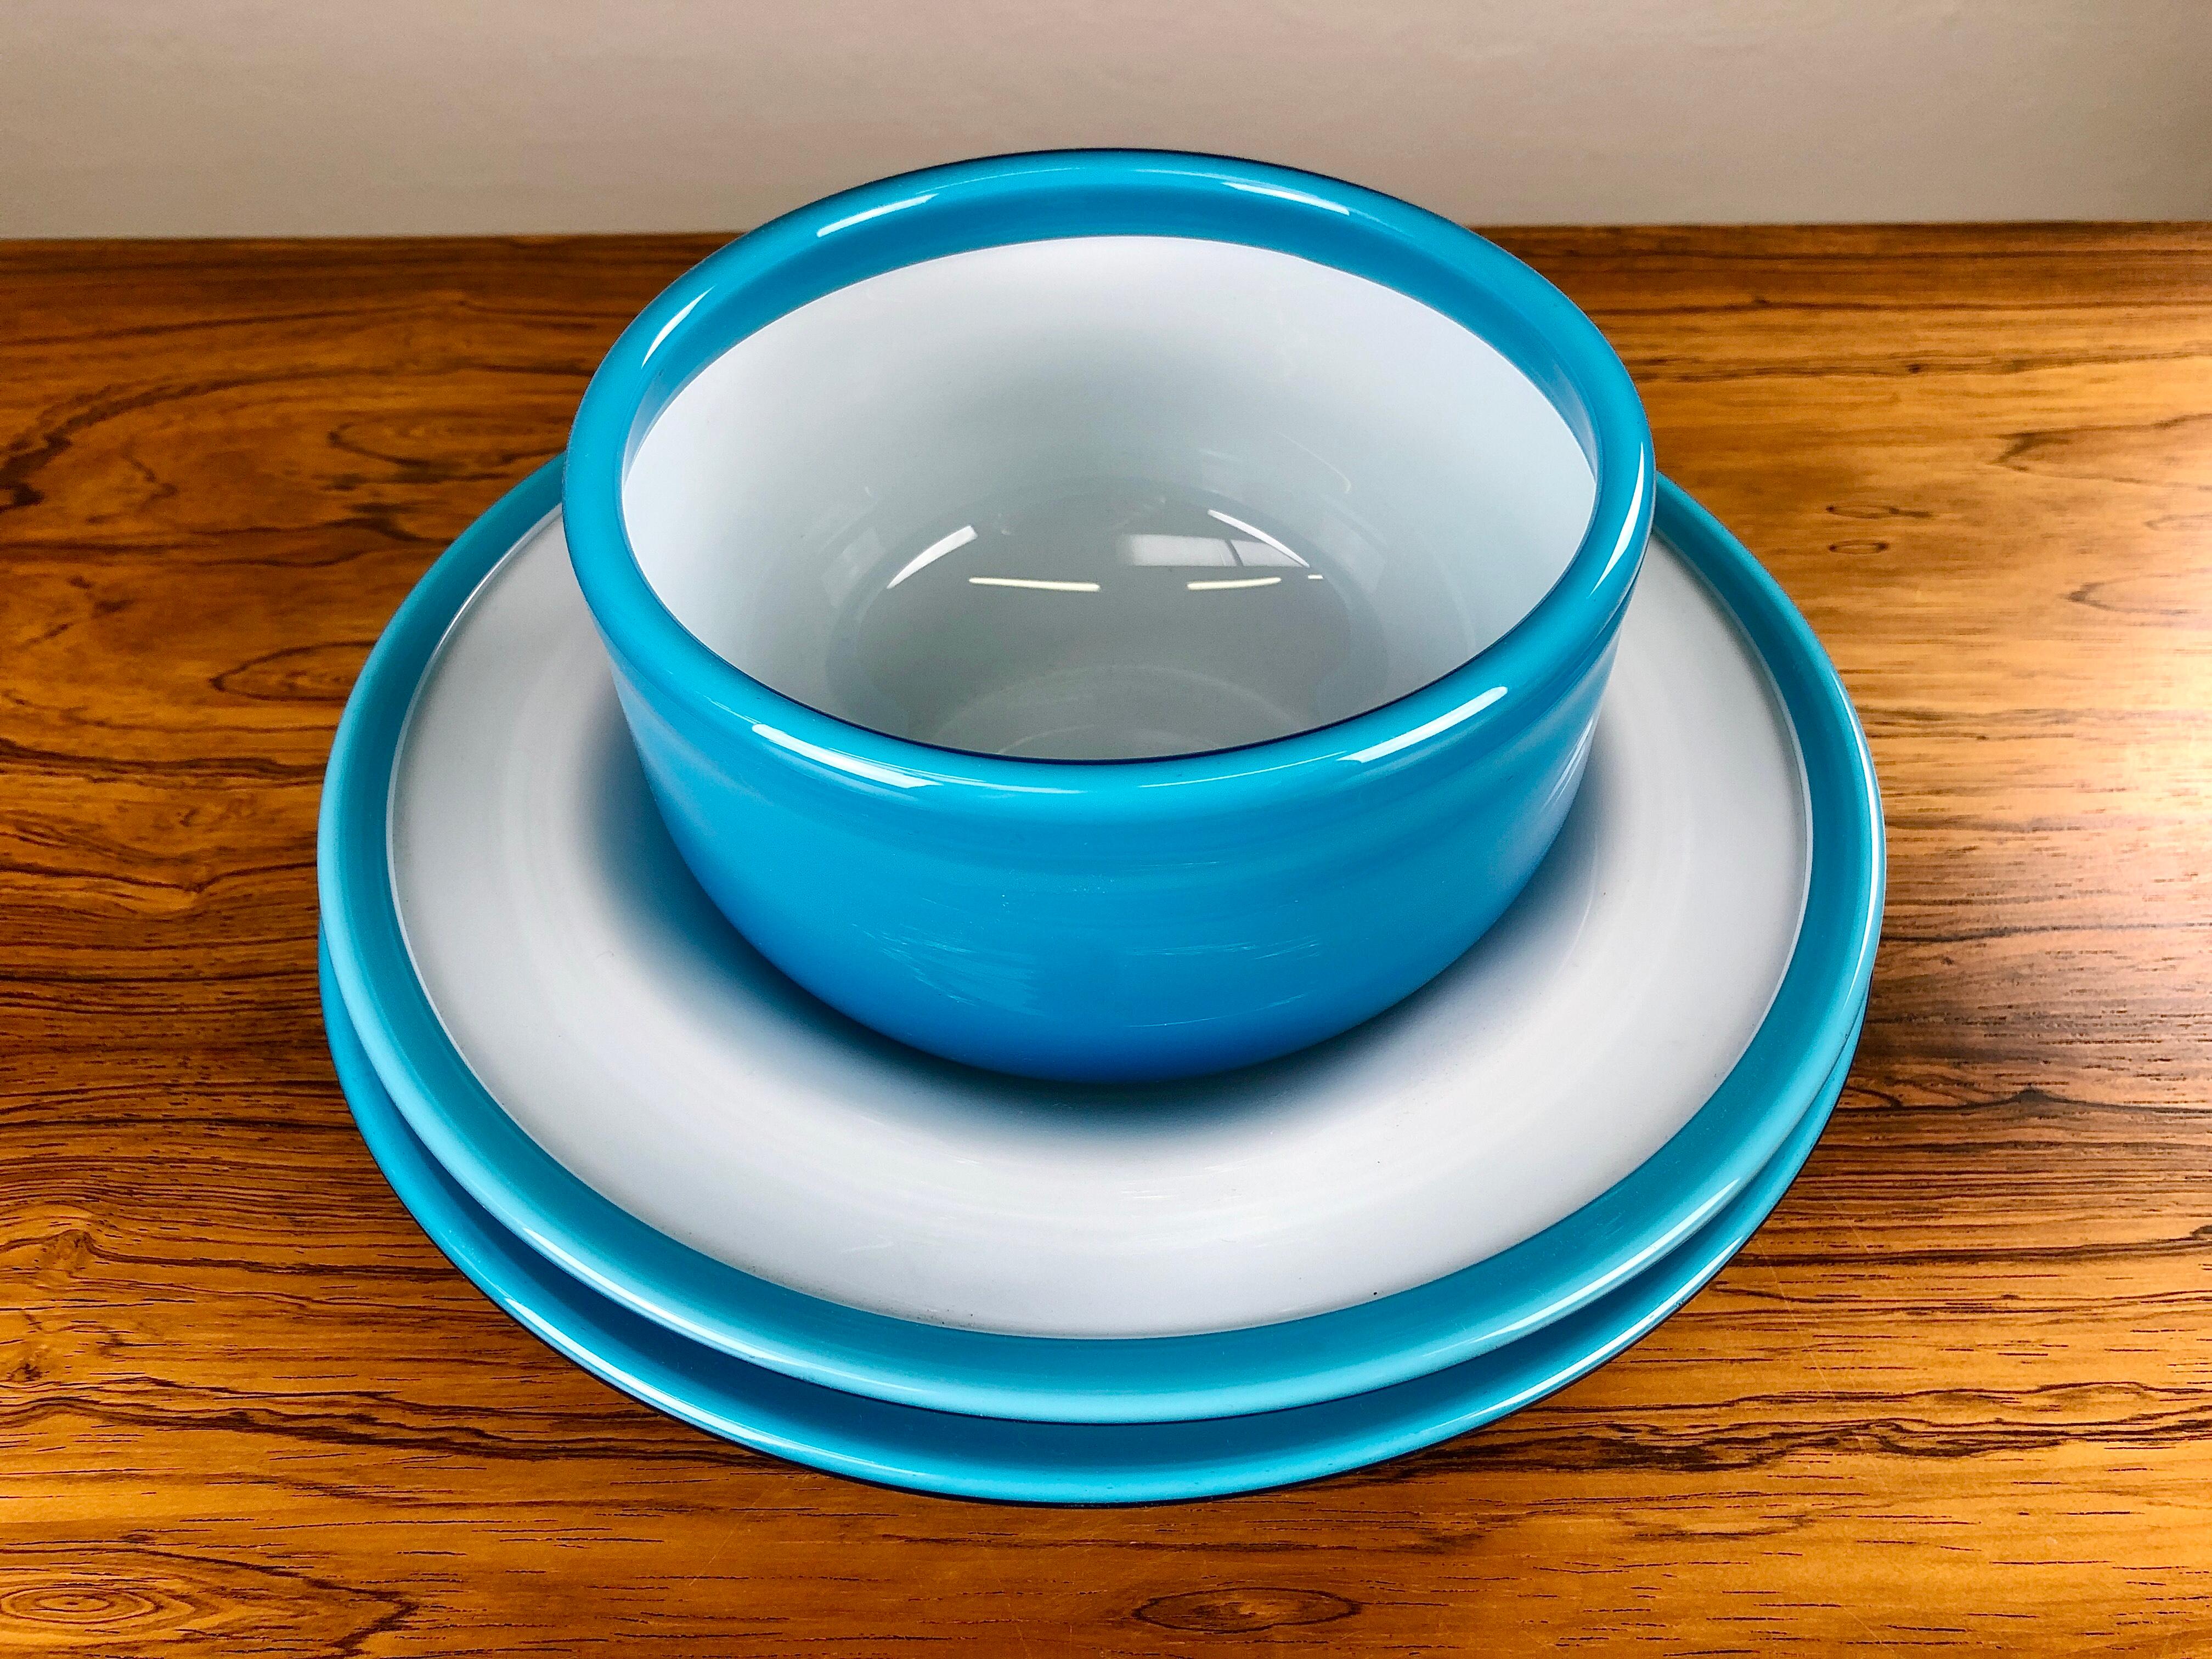 Ensemble de deux plats et d'un bol en verre bleu, conçu par Michael Bang et produit par Holmegaard dans les années 1970.

L'ensemble bien conçu avec ses couleurs des années 1970 est en très bon état.

Michael Bang (1942-2013) était le fils de